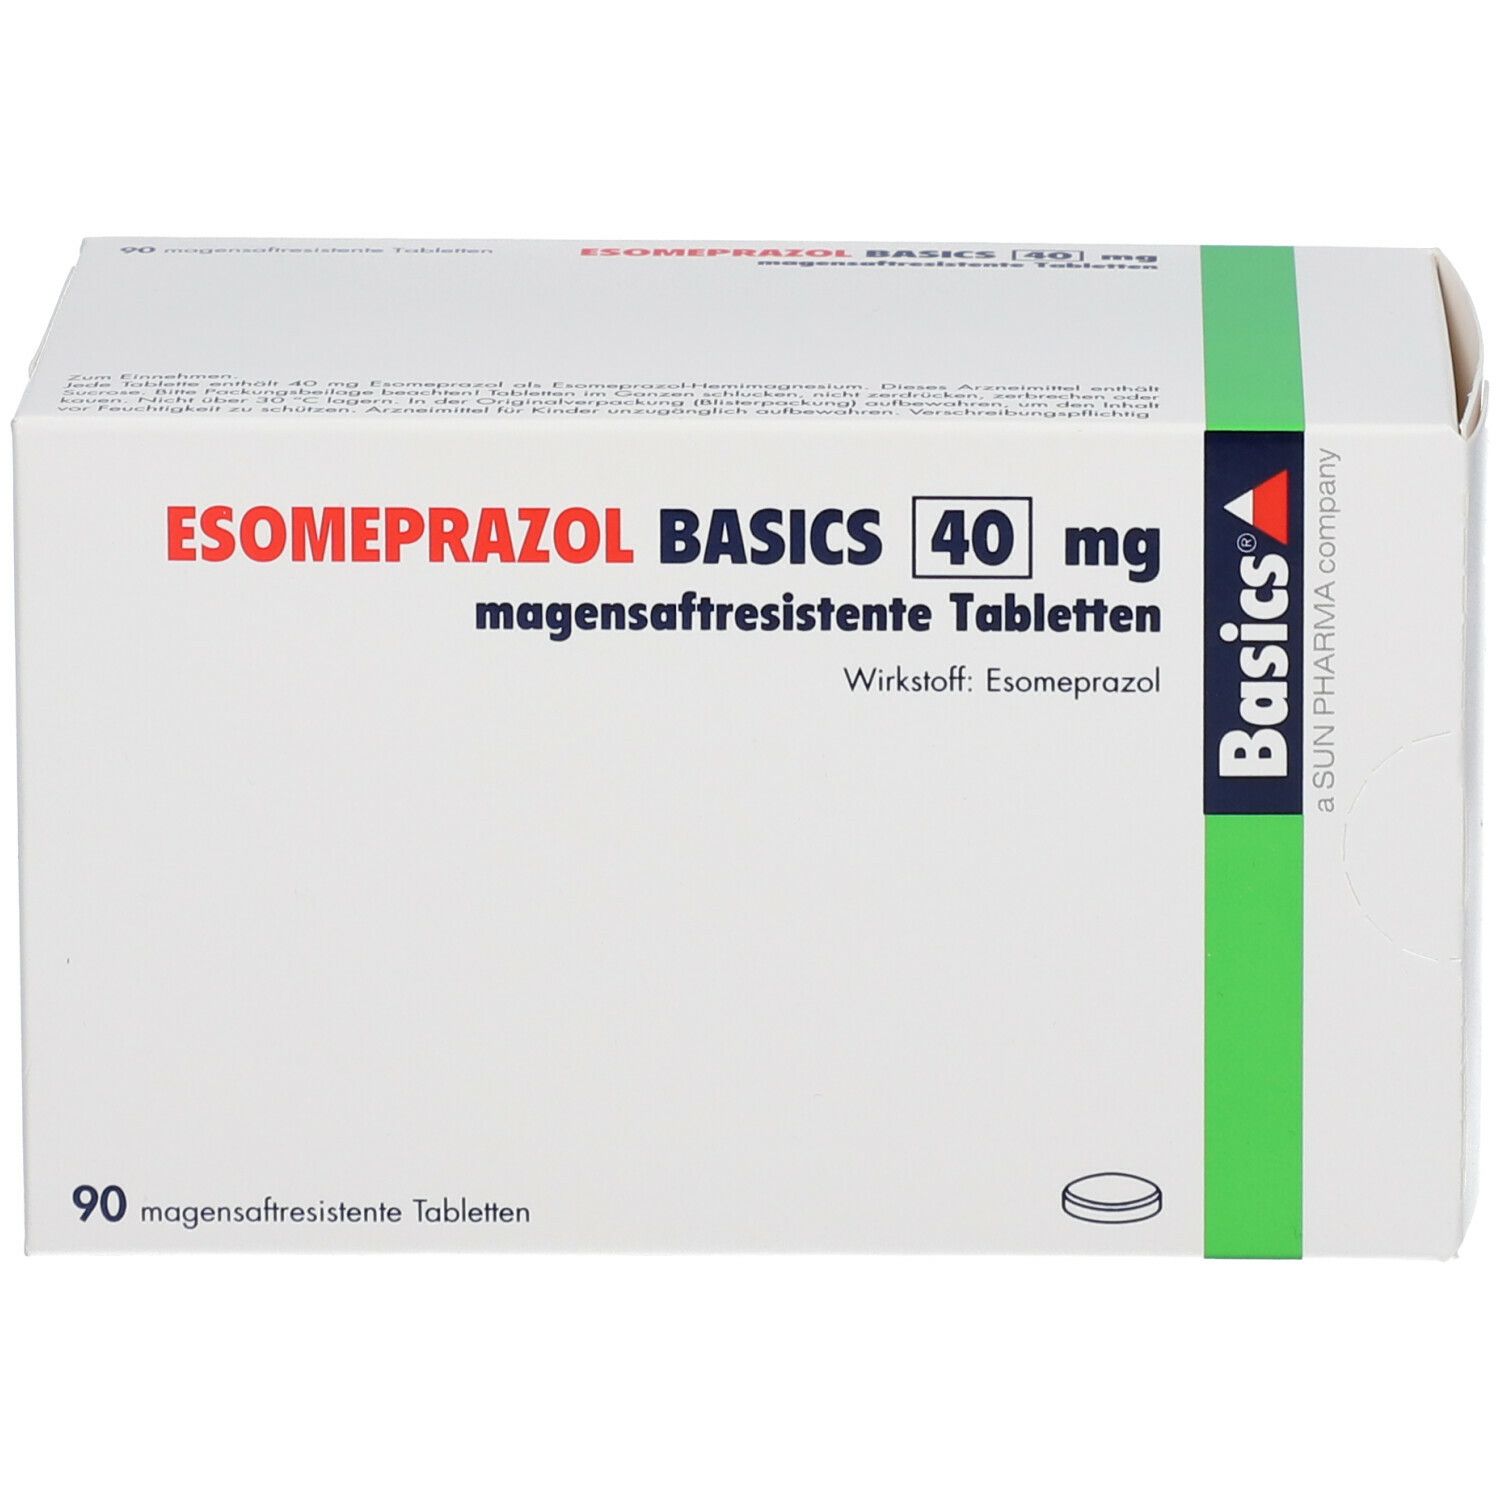 ESOMEPRAZOL BASICS 40 mg